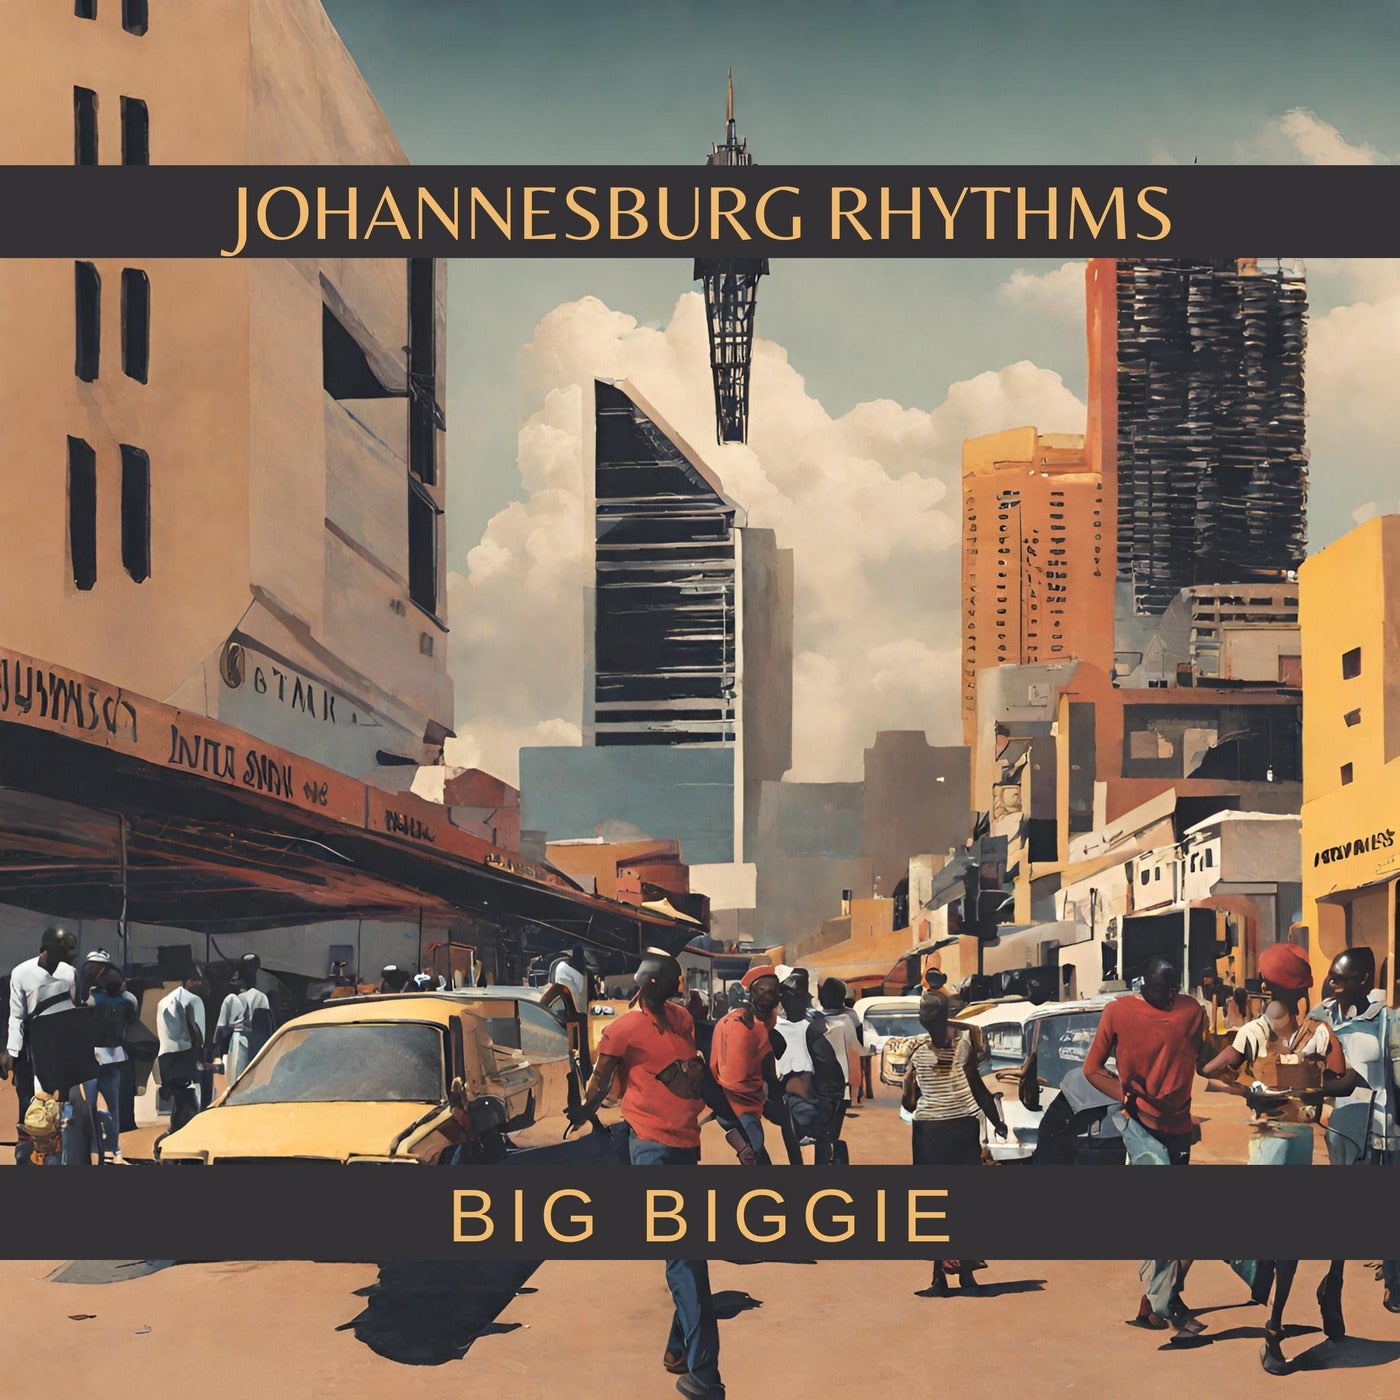 Johannesburg Rhythms